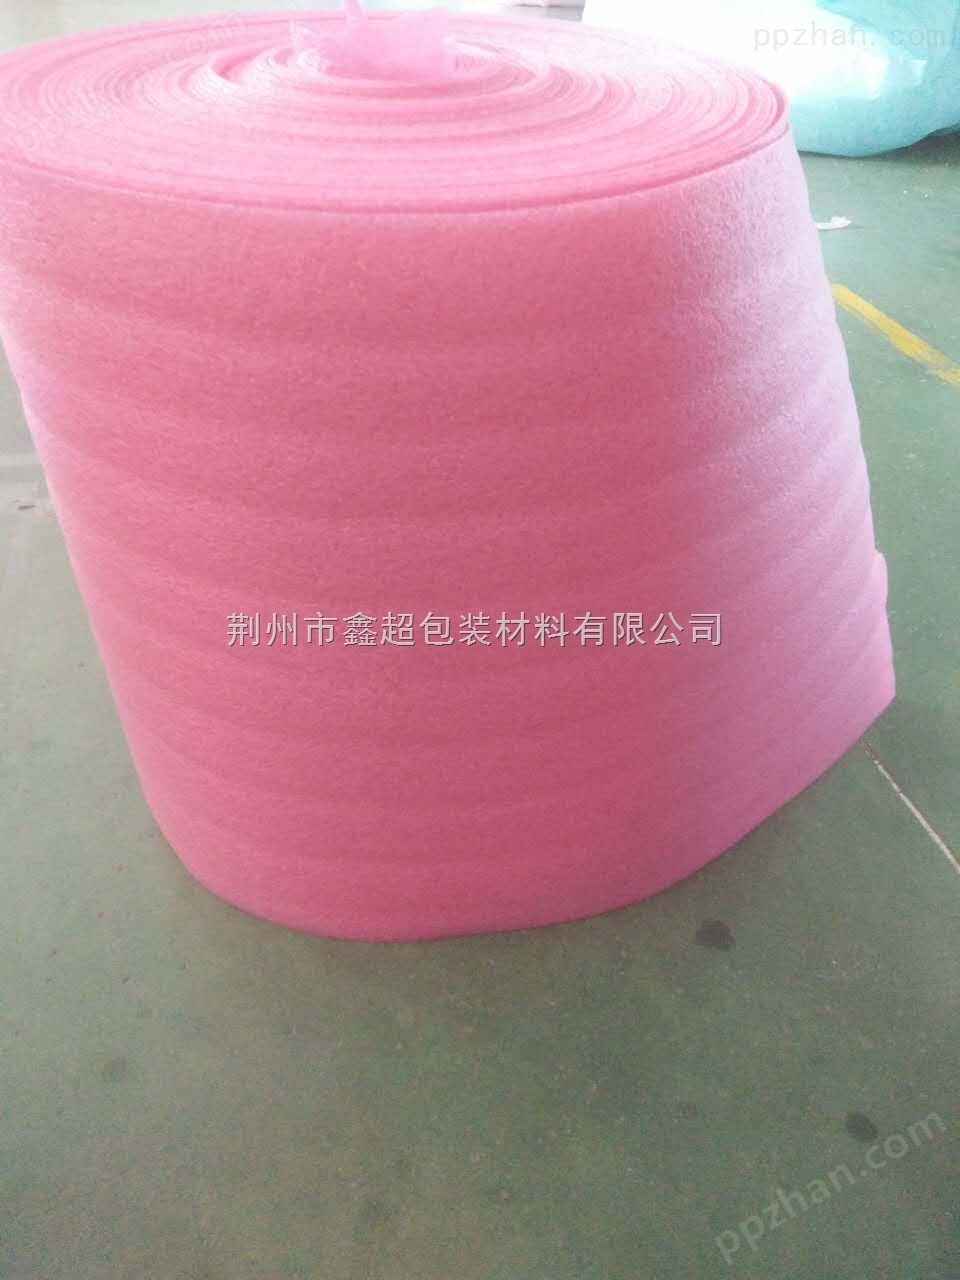 粉色珍珠棉可覆膜价格便宜环保无味扬州珍珠棉